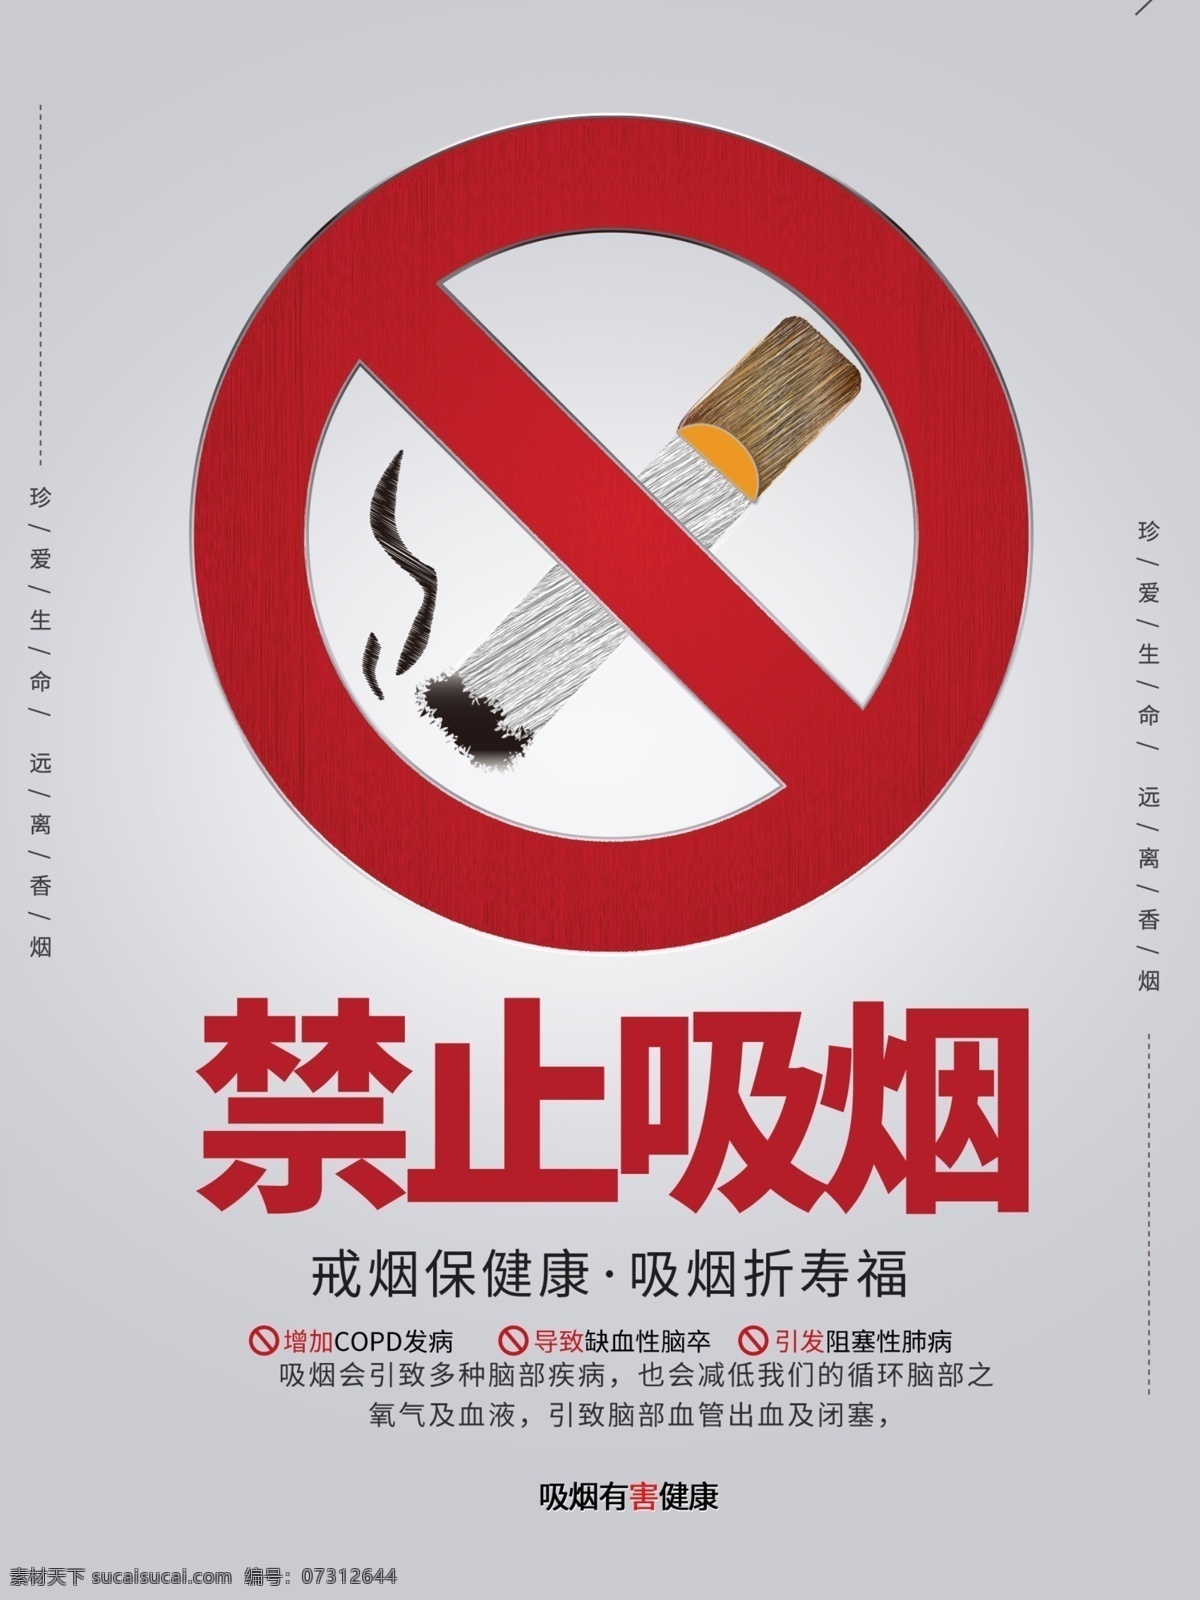 灰色 简约 风格 禁止 吸烟 公益 海报 禁烟 展板模板